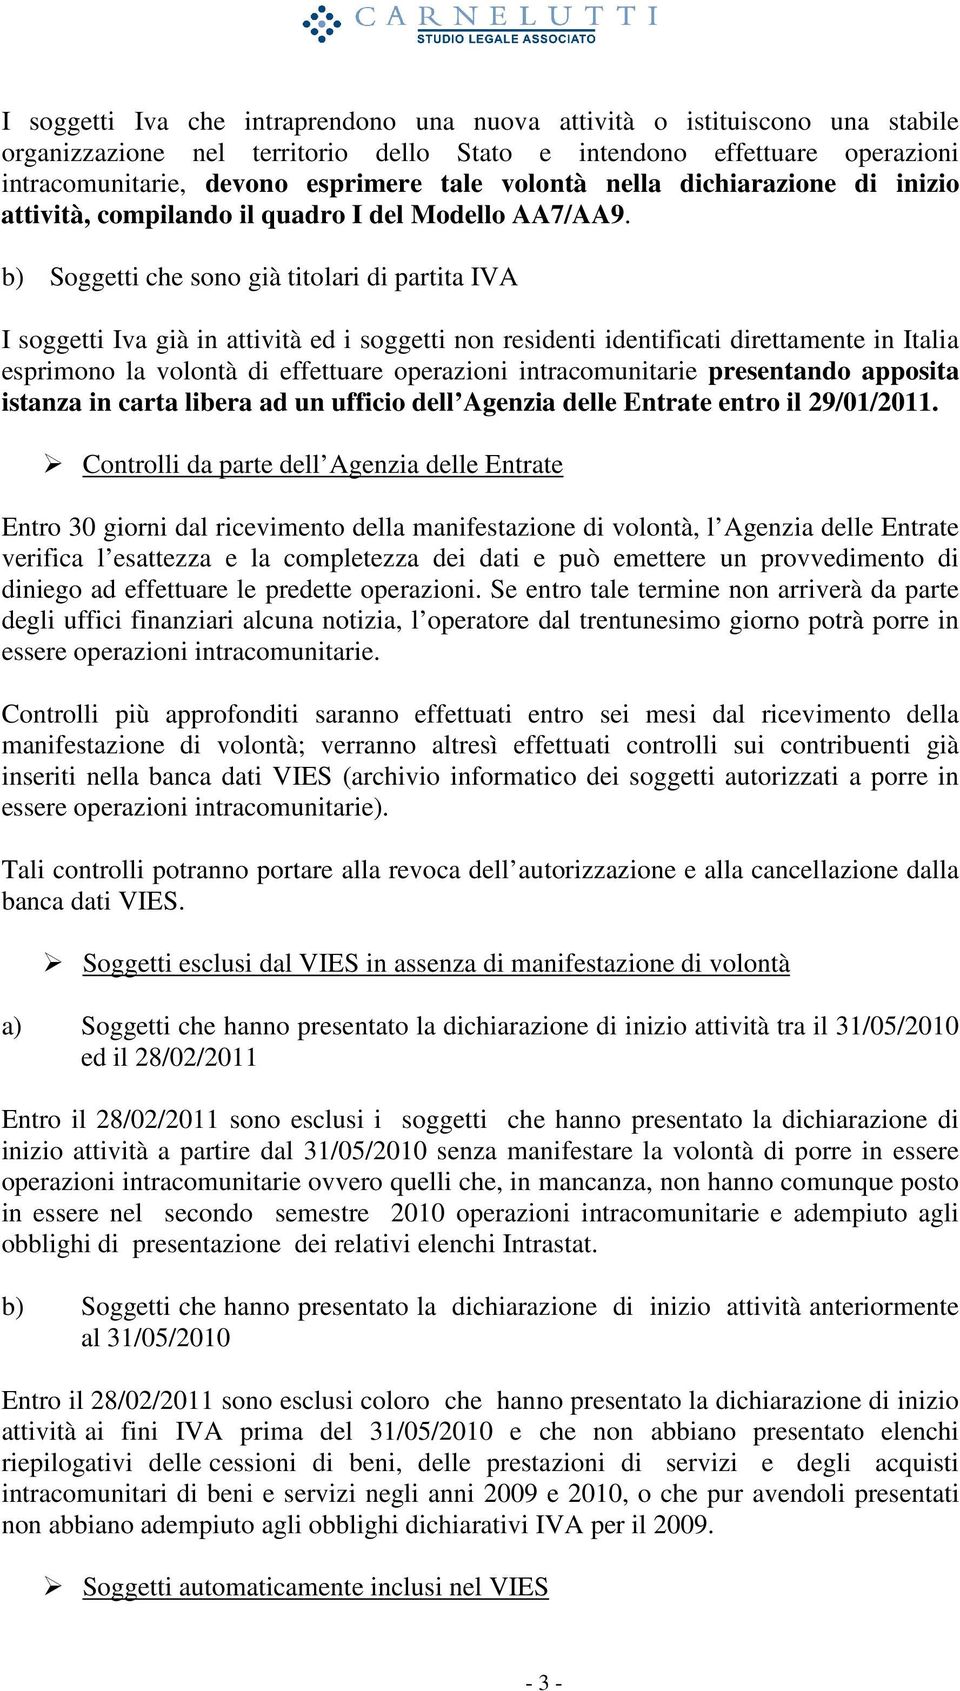 b) Soggetti che sono già titolari di partita IVA I soggetti Iva già in attività ed i soggetti non residenti identificati direttamente in Italia esprimono la volontà di effettuare operazioni